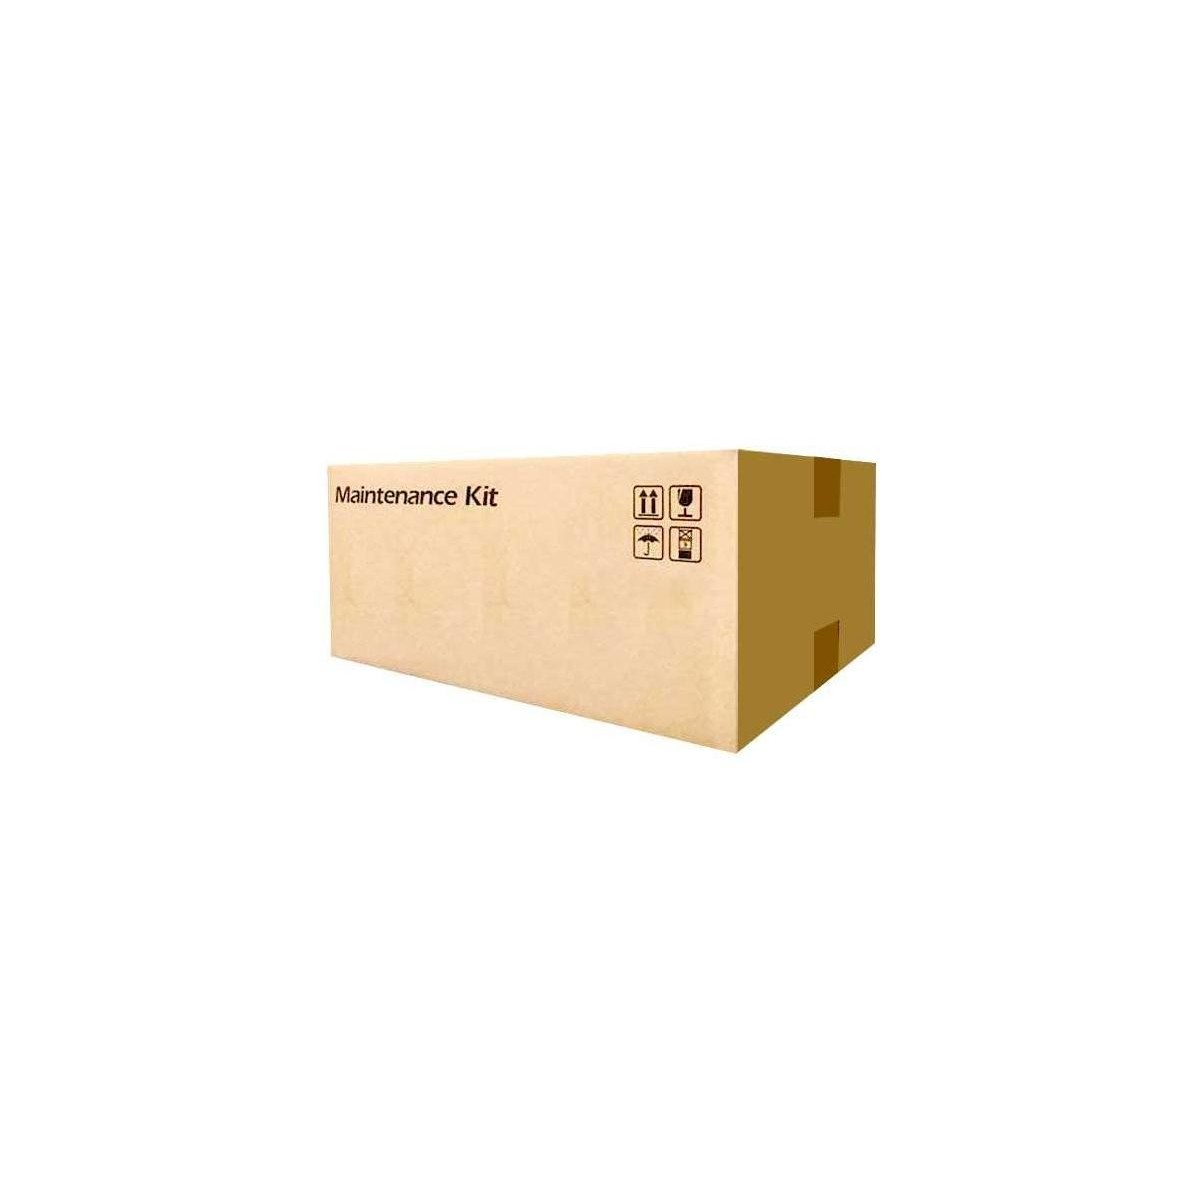 Kyocera MK-8525A - Maintenance kit - Black - Laser - 600000 pages - Kyocera - TASKalfa 4053ci/5053ci/6053ci